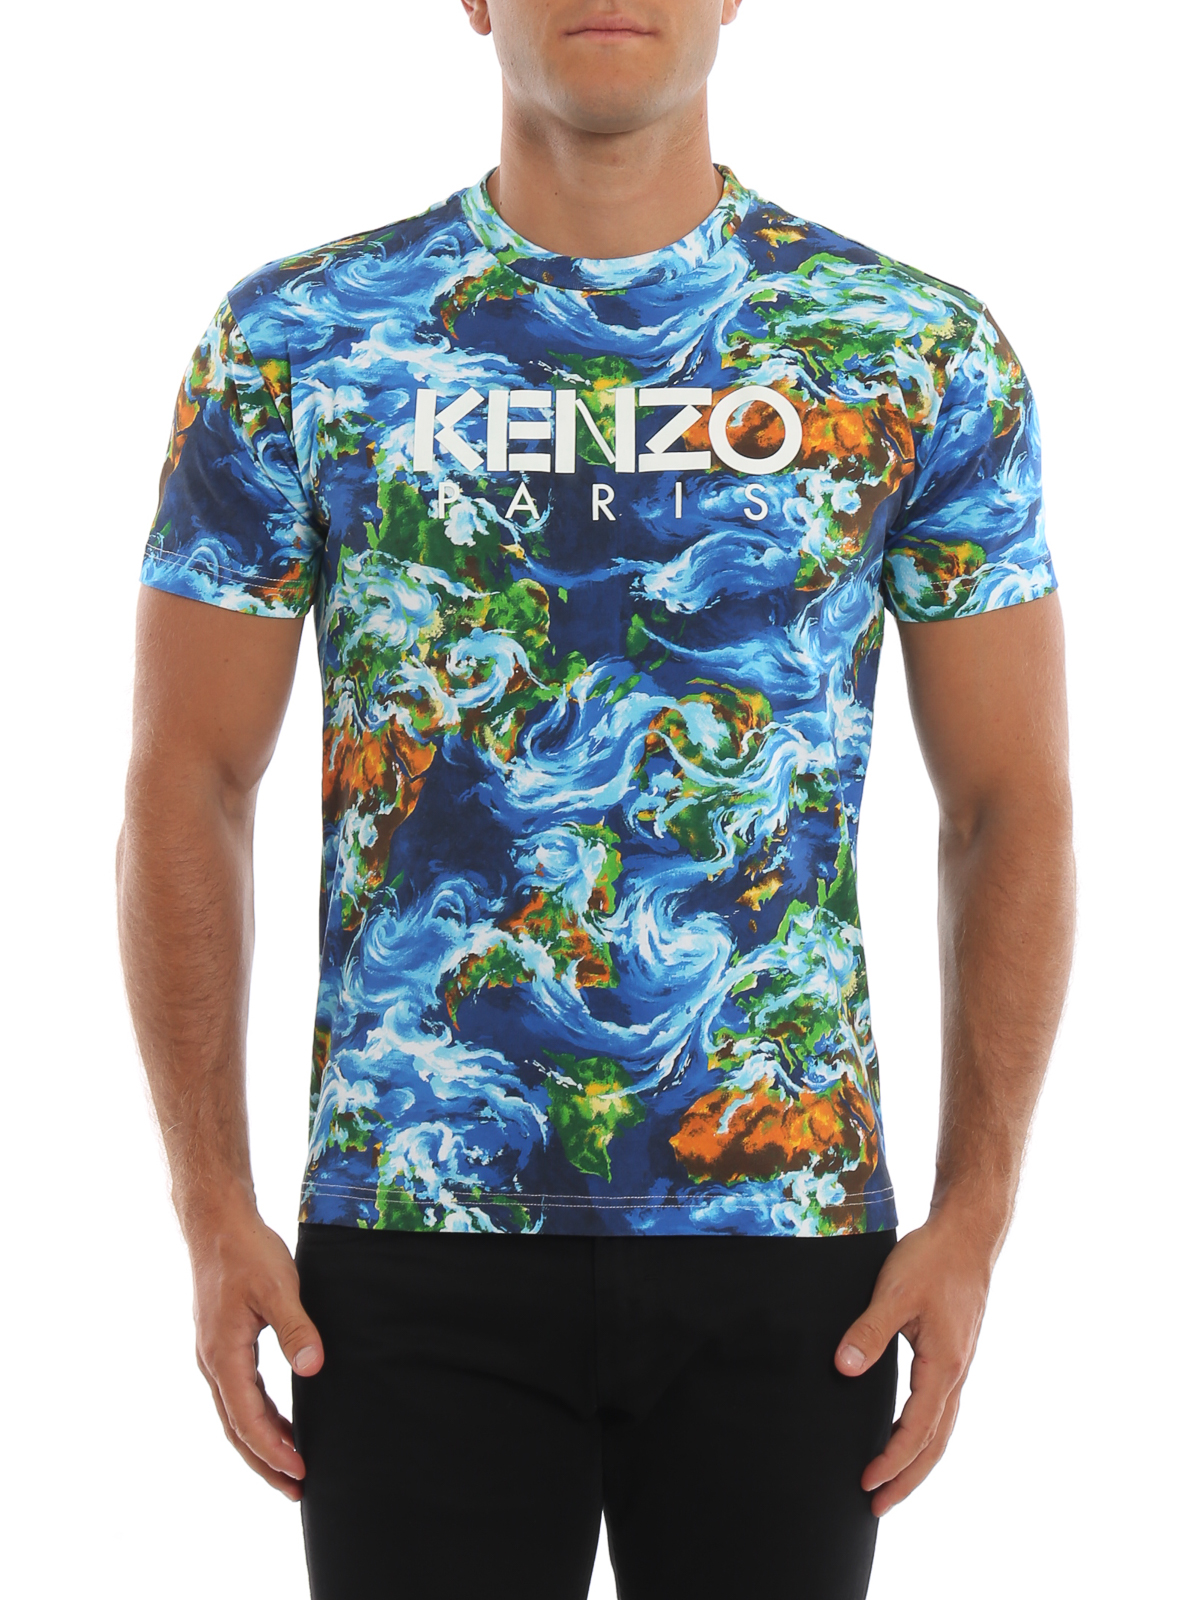 kenzo world t shirt